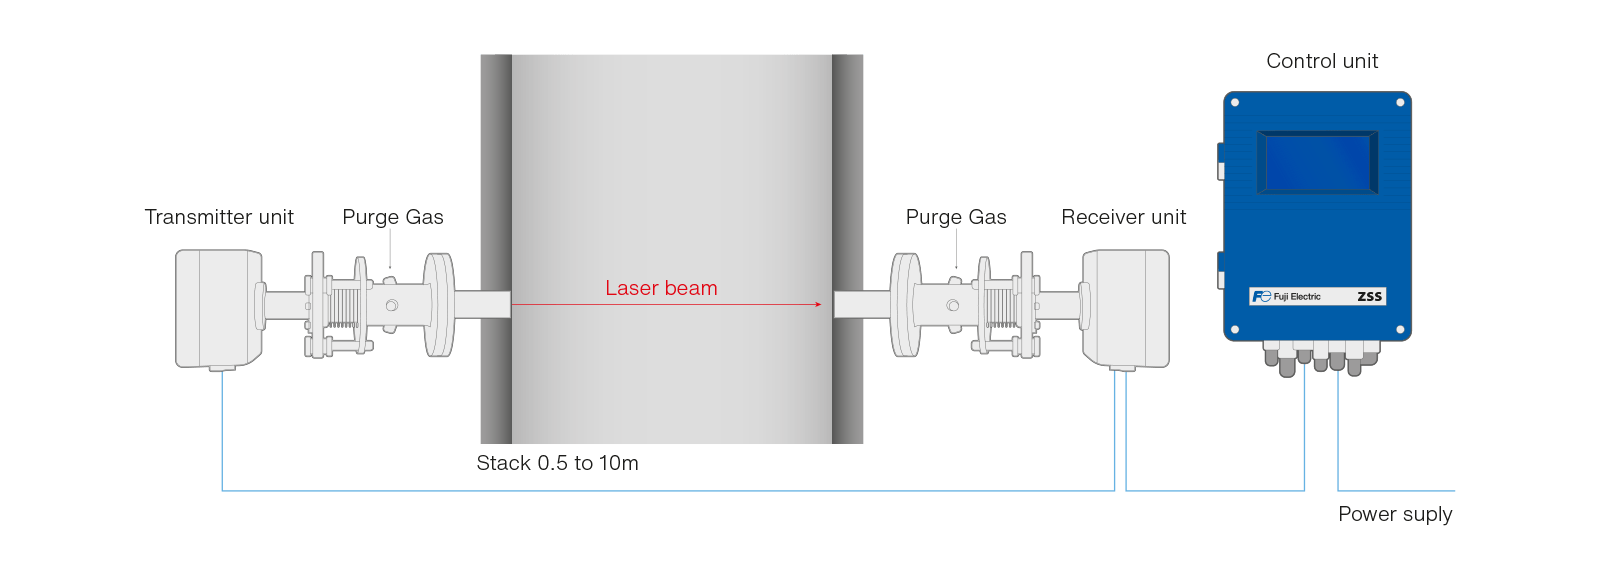 o analisador laser zss permite a combustão com um diagrama de excesso de ar muito baixo pt